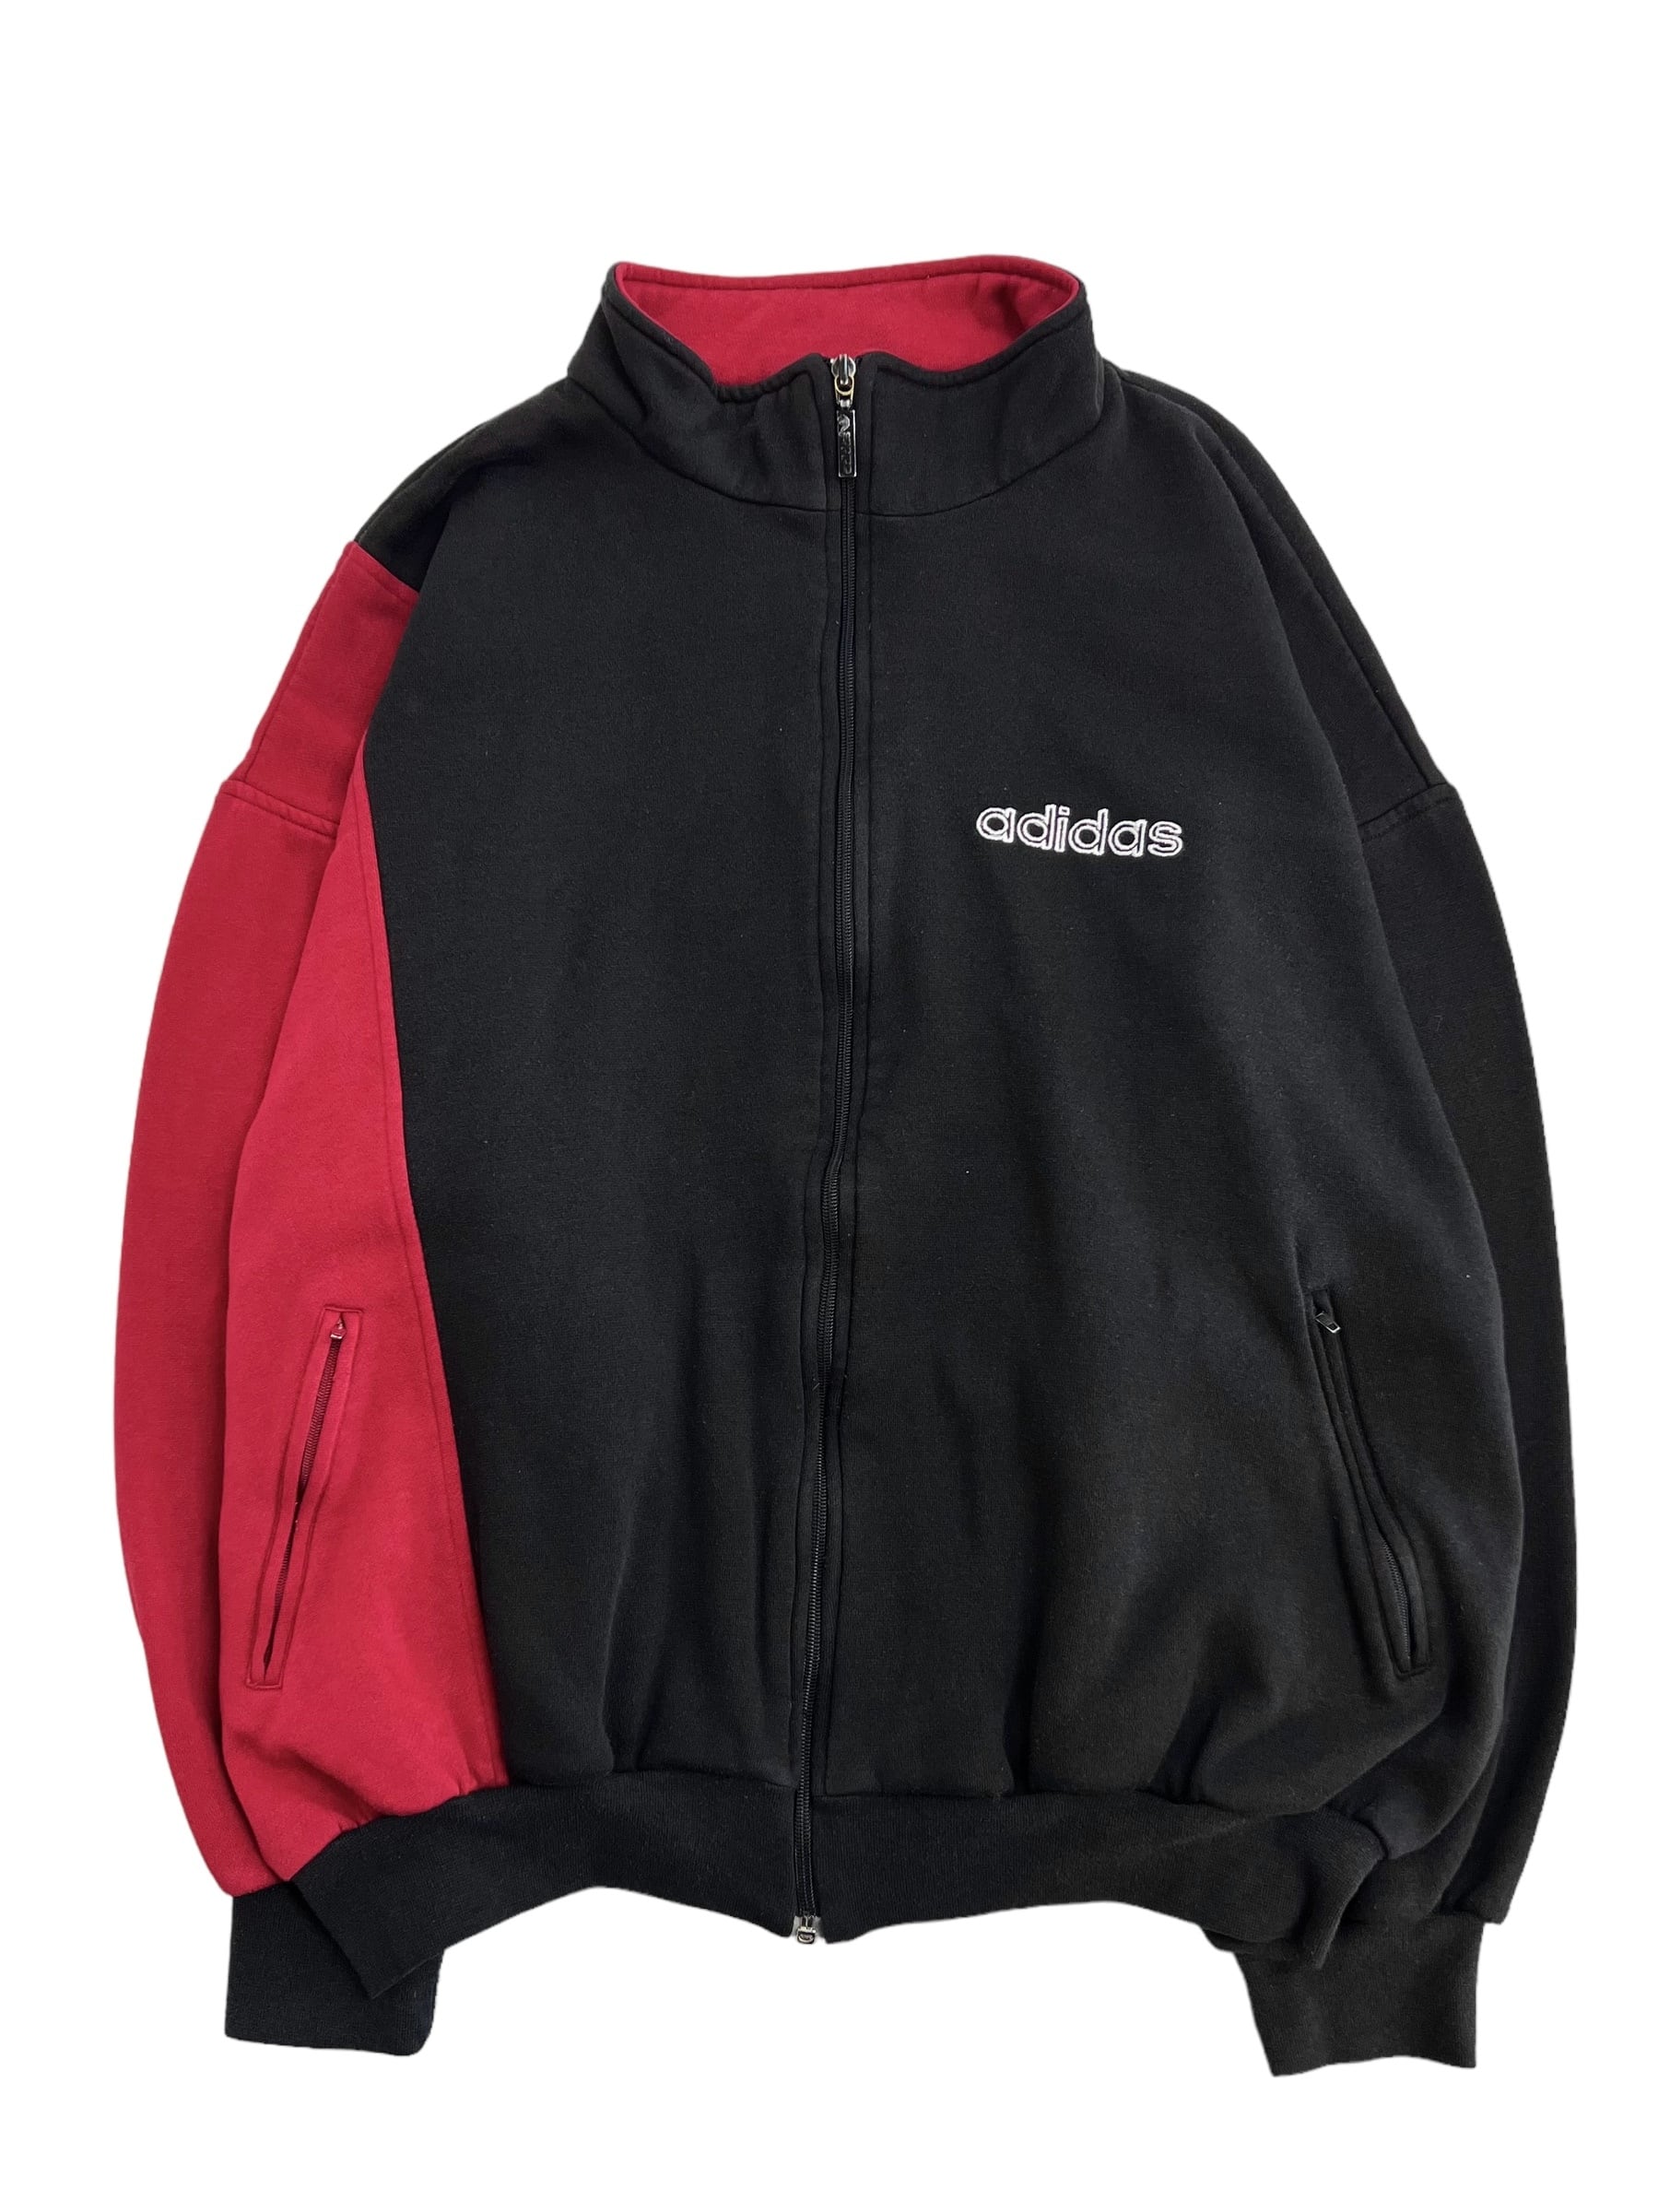 デサント製 [ 4号 ] 80's adidas vintage track jacket アディダス